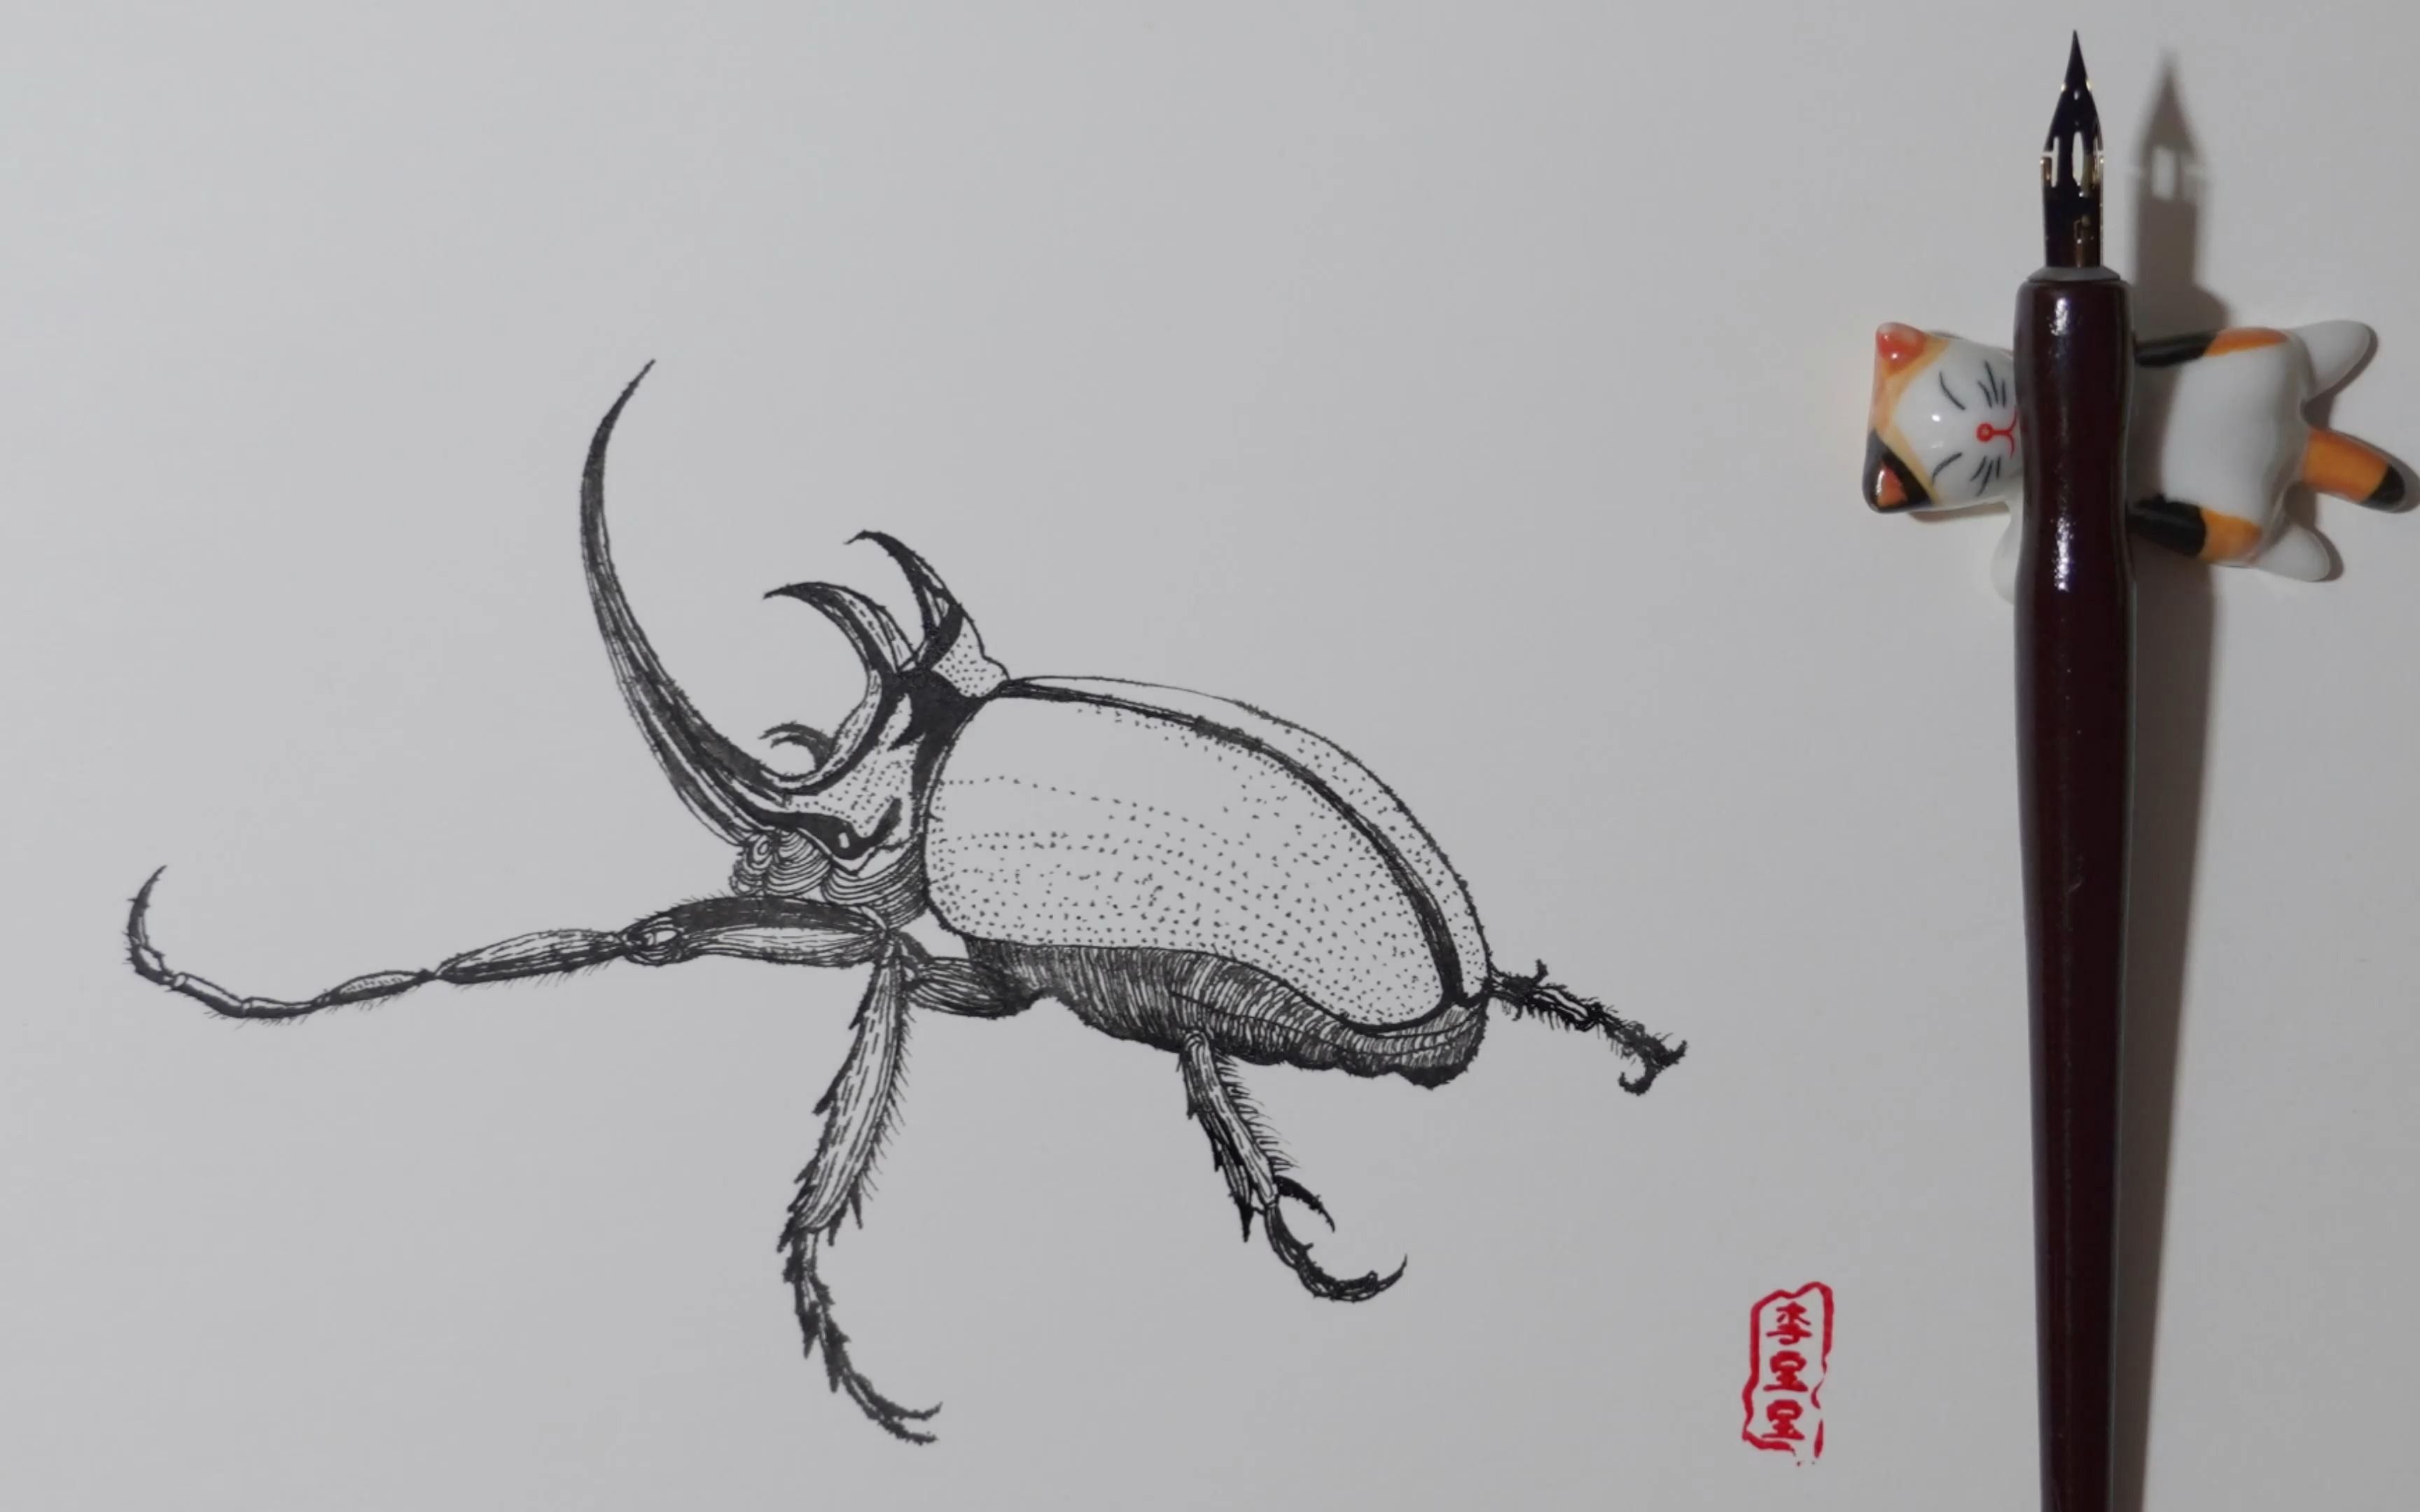 钢笔画:《独角仙》别名又叫双叉犀金龟,昆虫金龟子科,独角仙因雄性有